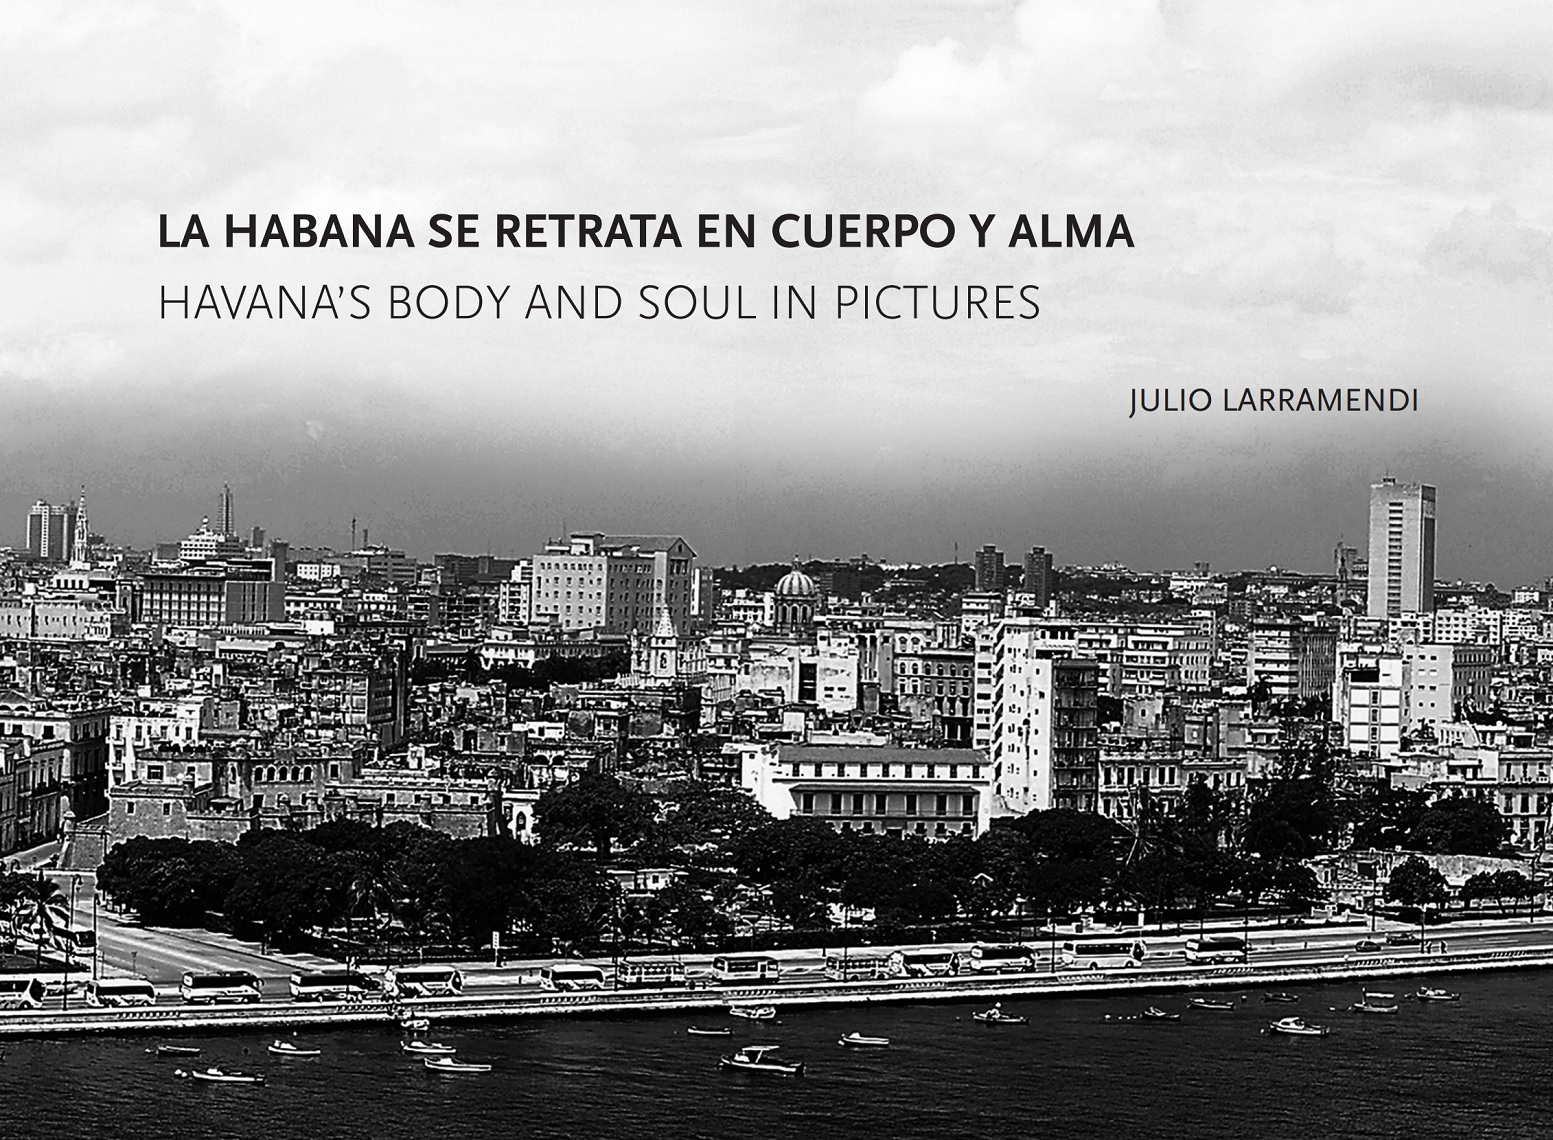 La Habana se retrata en cuerpo y alma